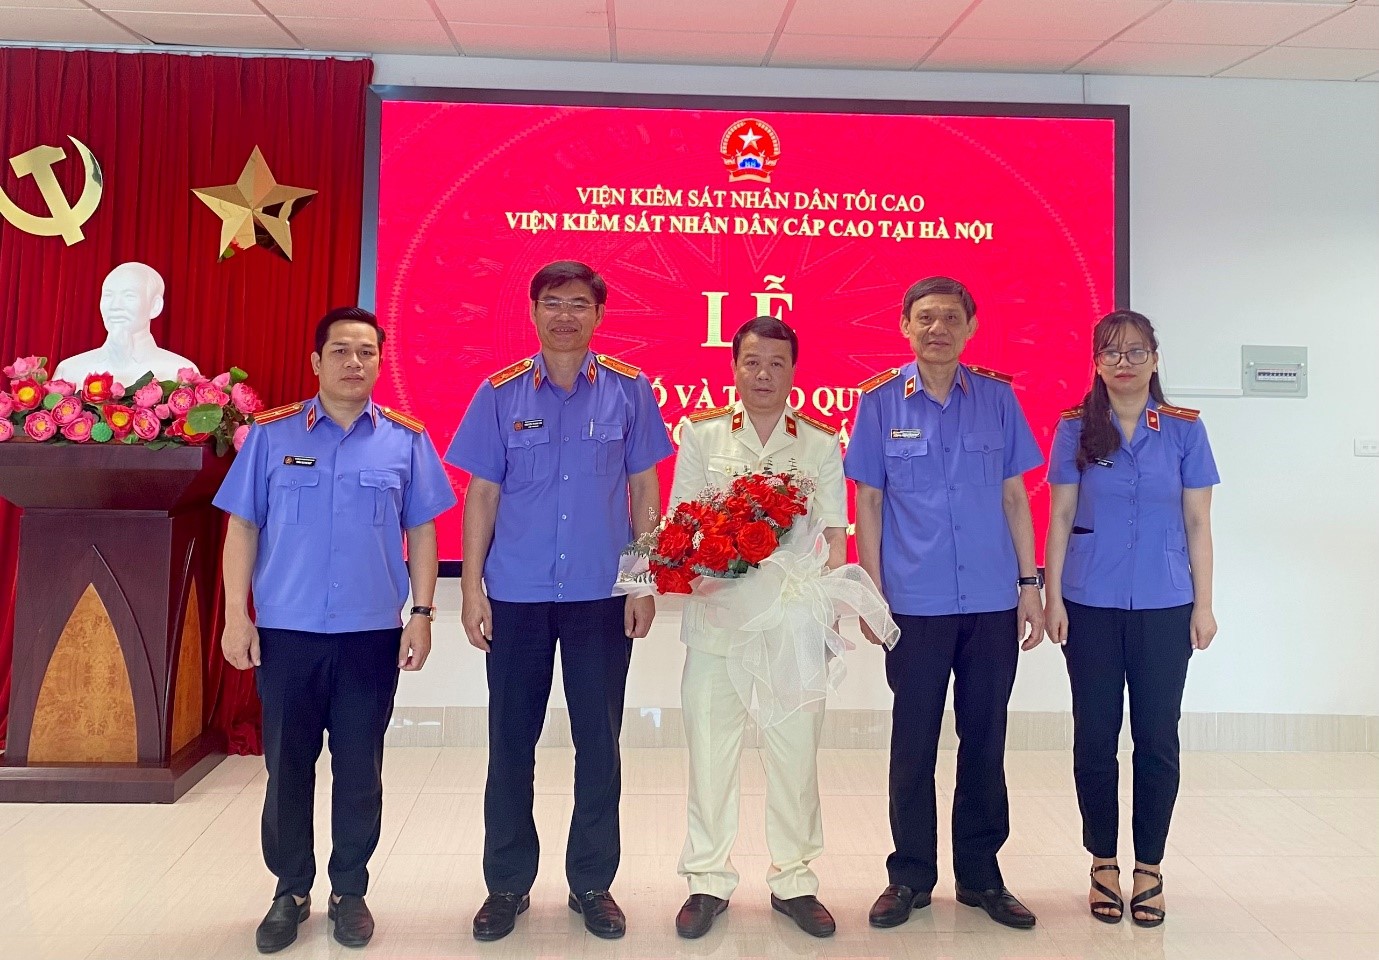 Viện kiểm sát nhân dân cấp cao tại Hà Nội tổ chức Lễ công bố và trao các quyết định về công tác cán bộ